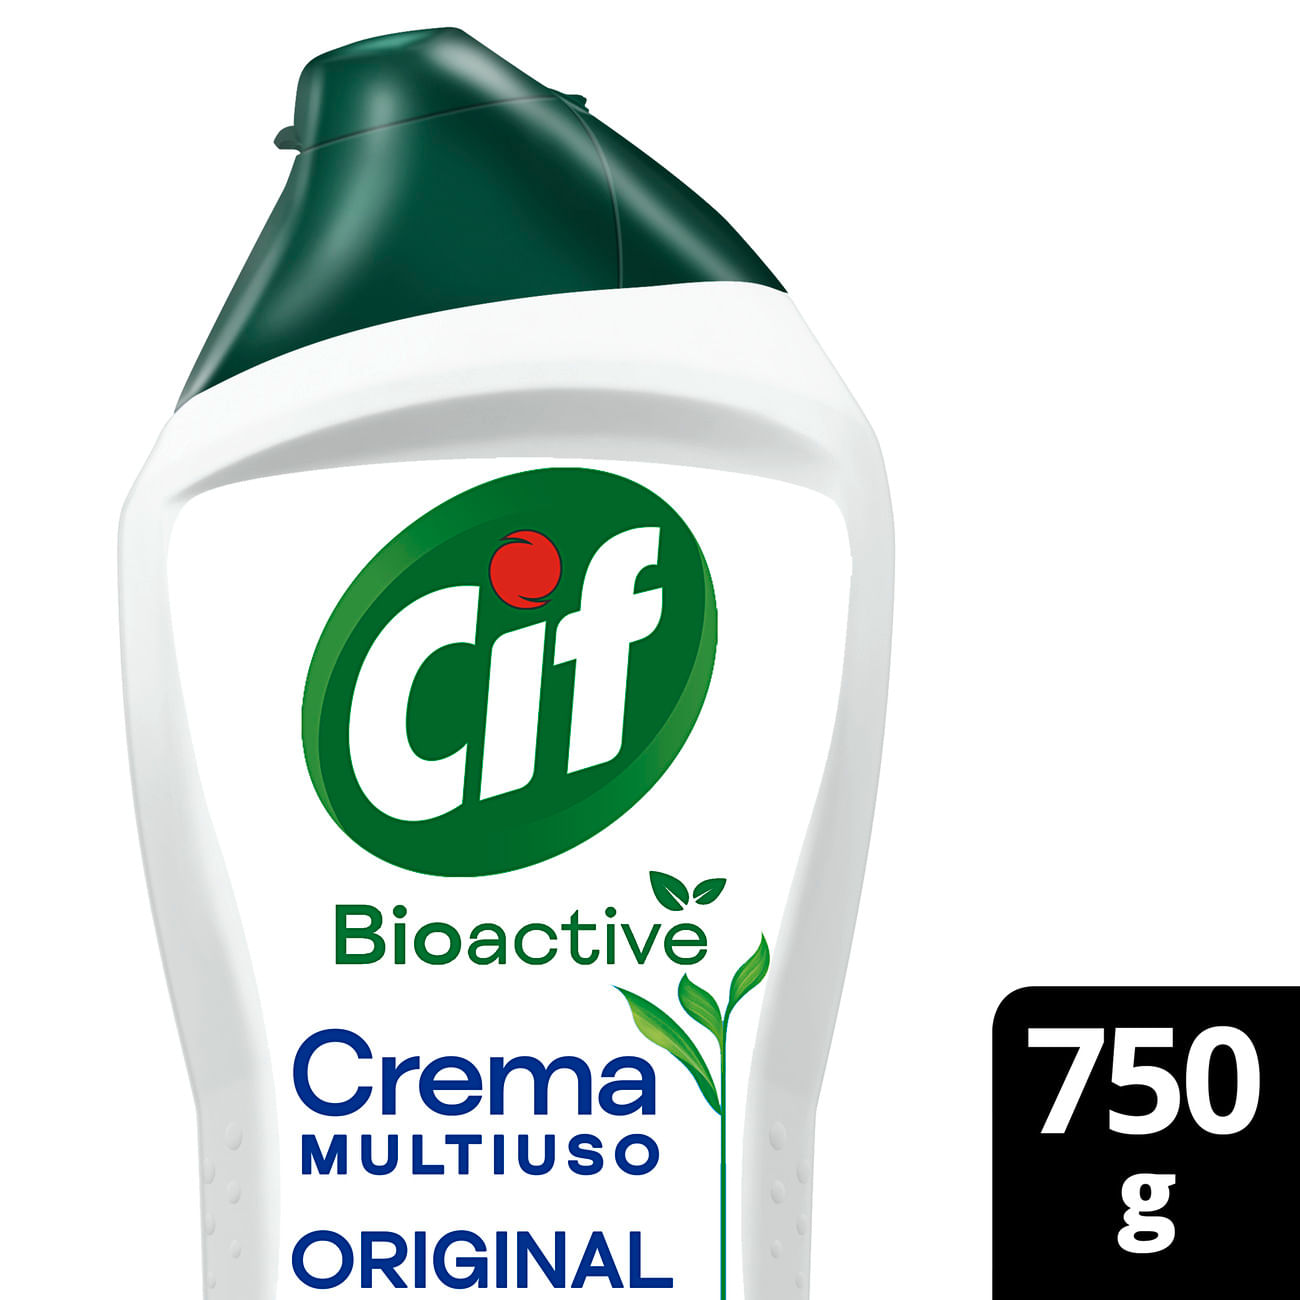 Limpiador Cif Crema de 2 lts.